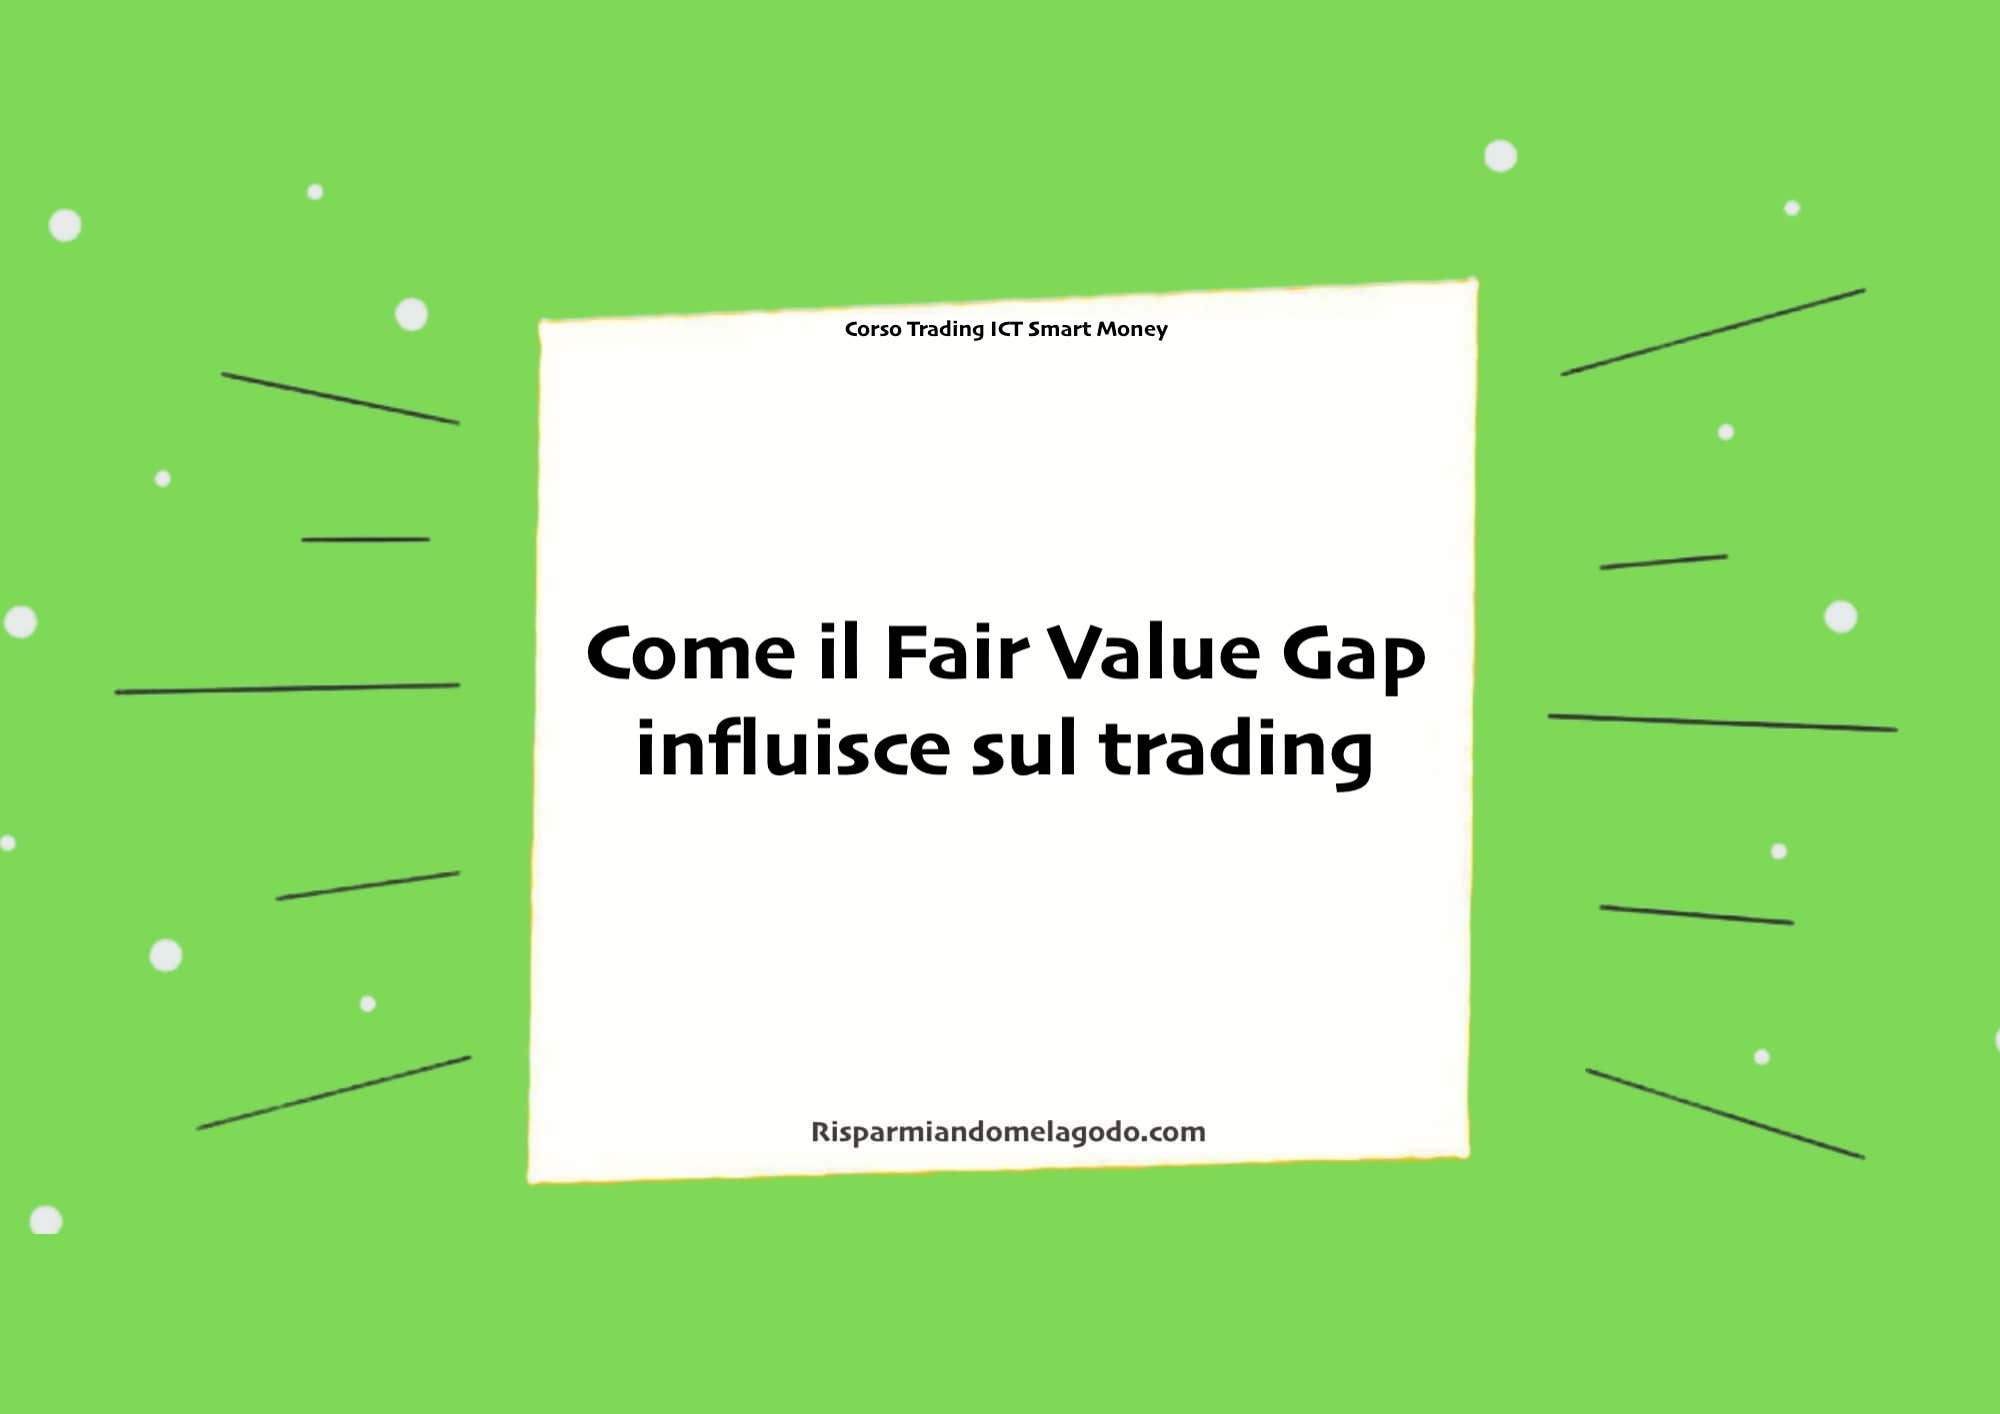 Come il Fair Value Gap influisce sul trading